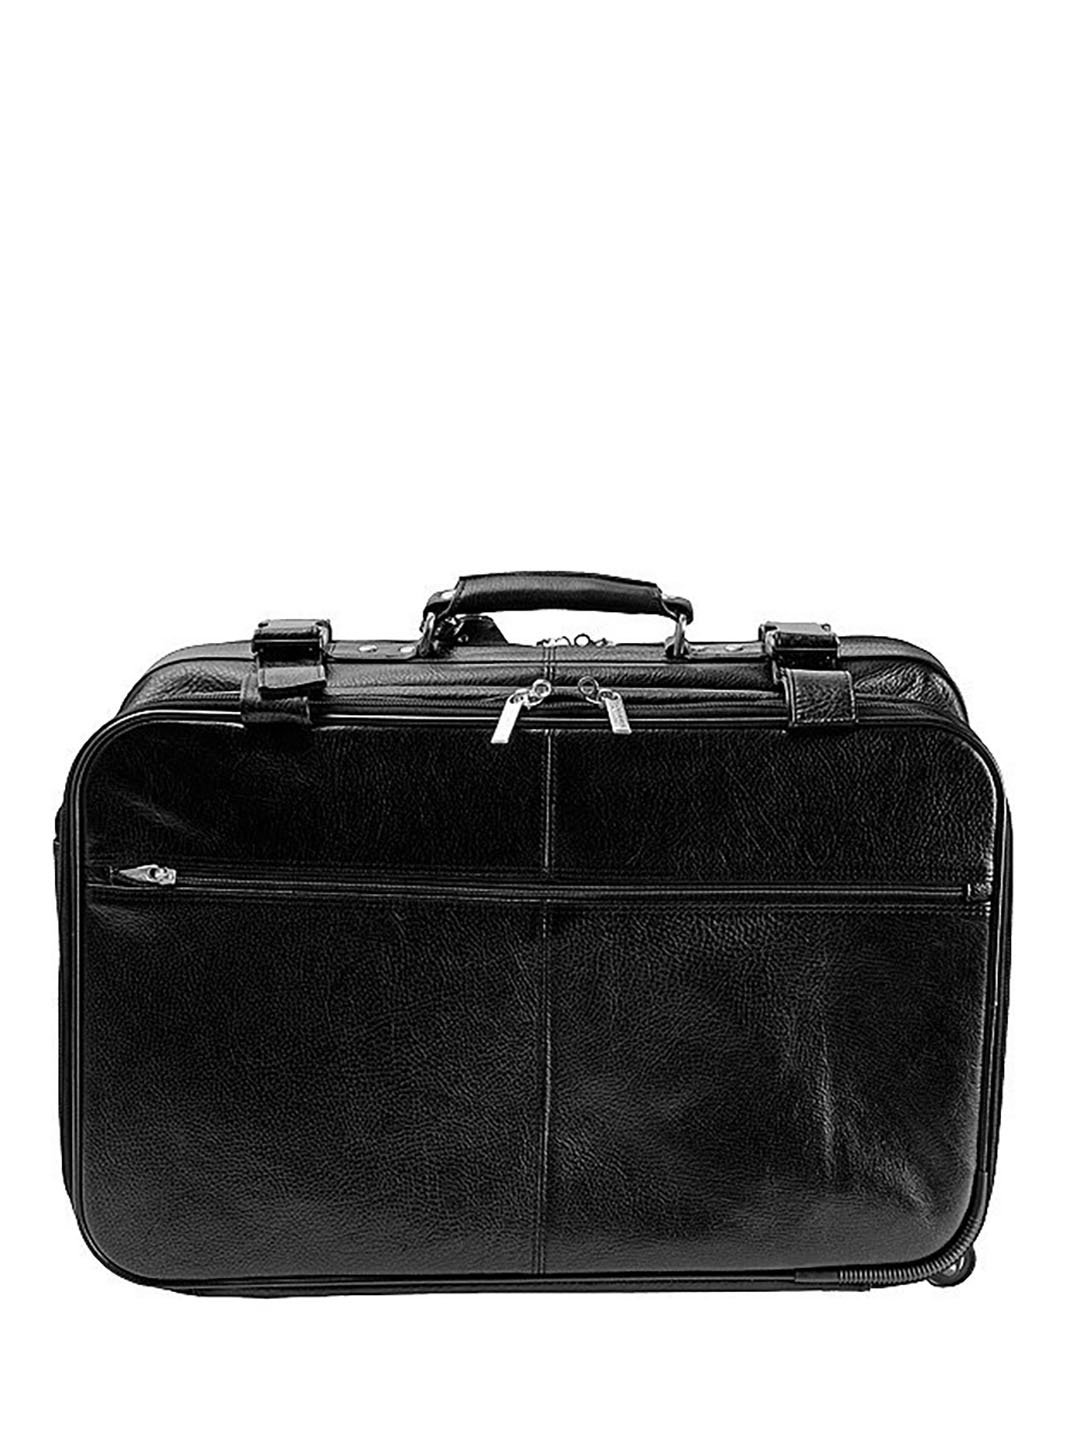 Фото Дорожная сумка на колесах из натуральной кожи черного цвета Дорожные сумки